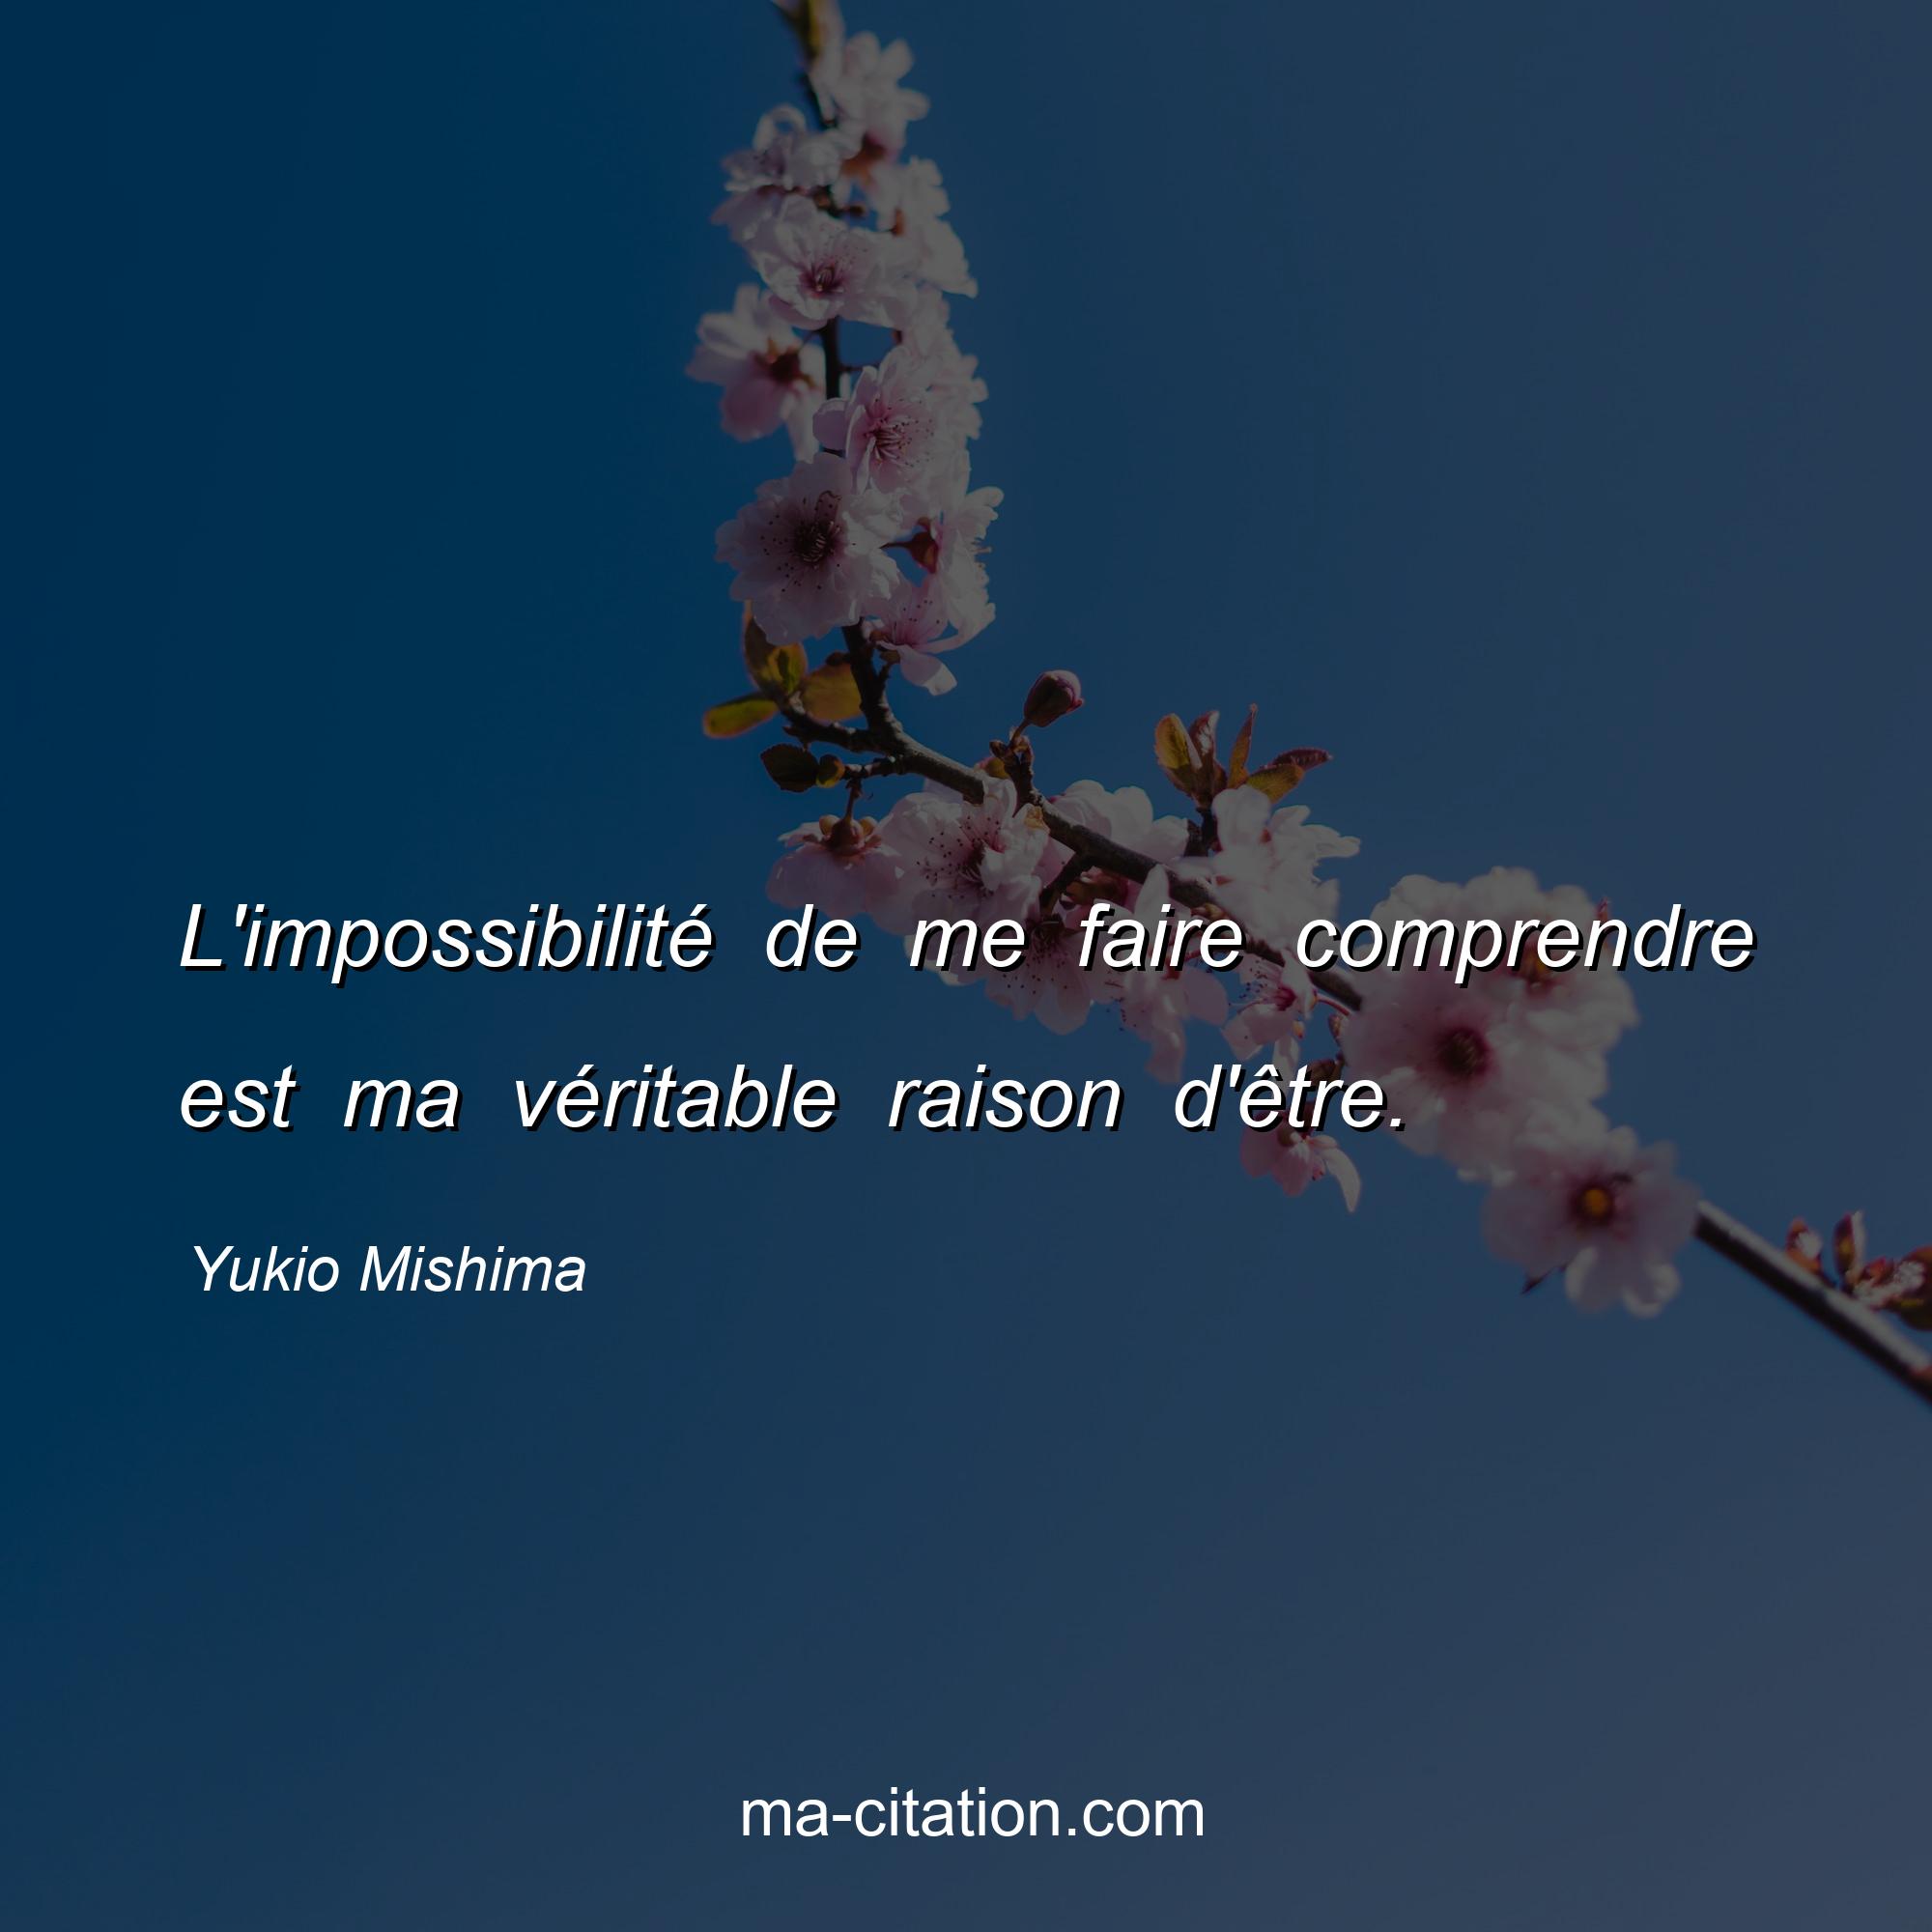 Yukio Mishima : L'impossibilité de me faire comprendre est ma véritable raison d'être.